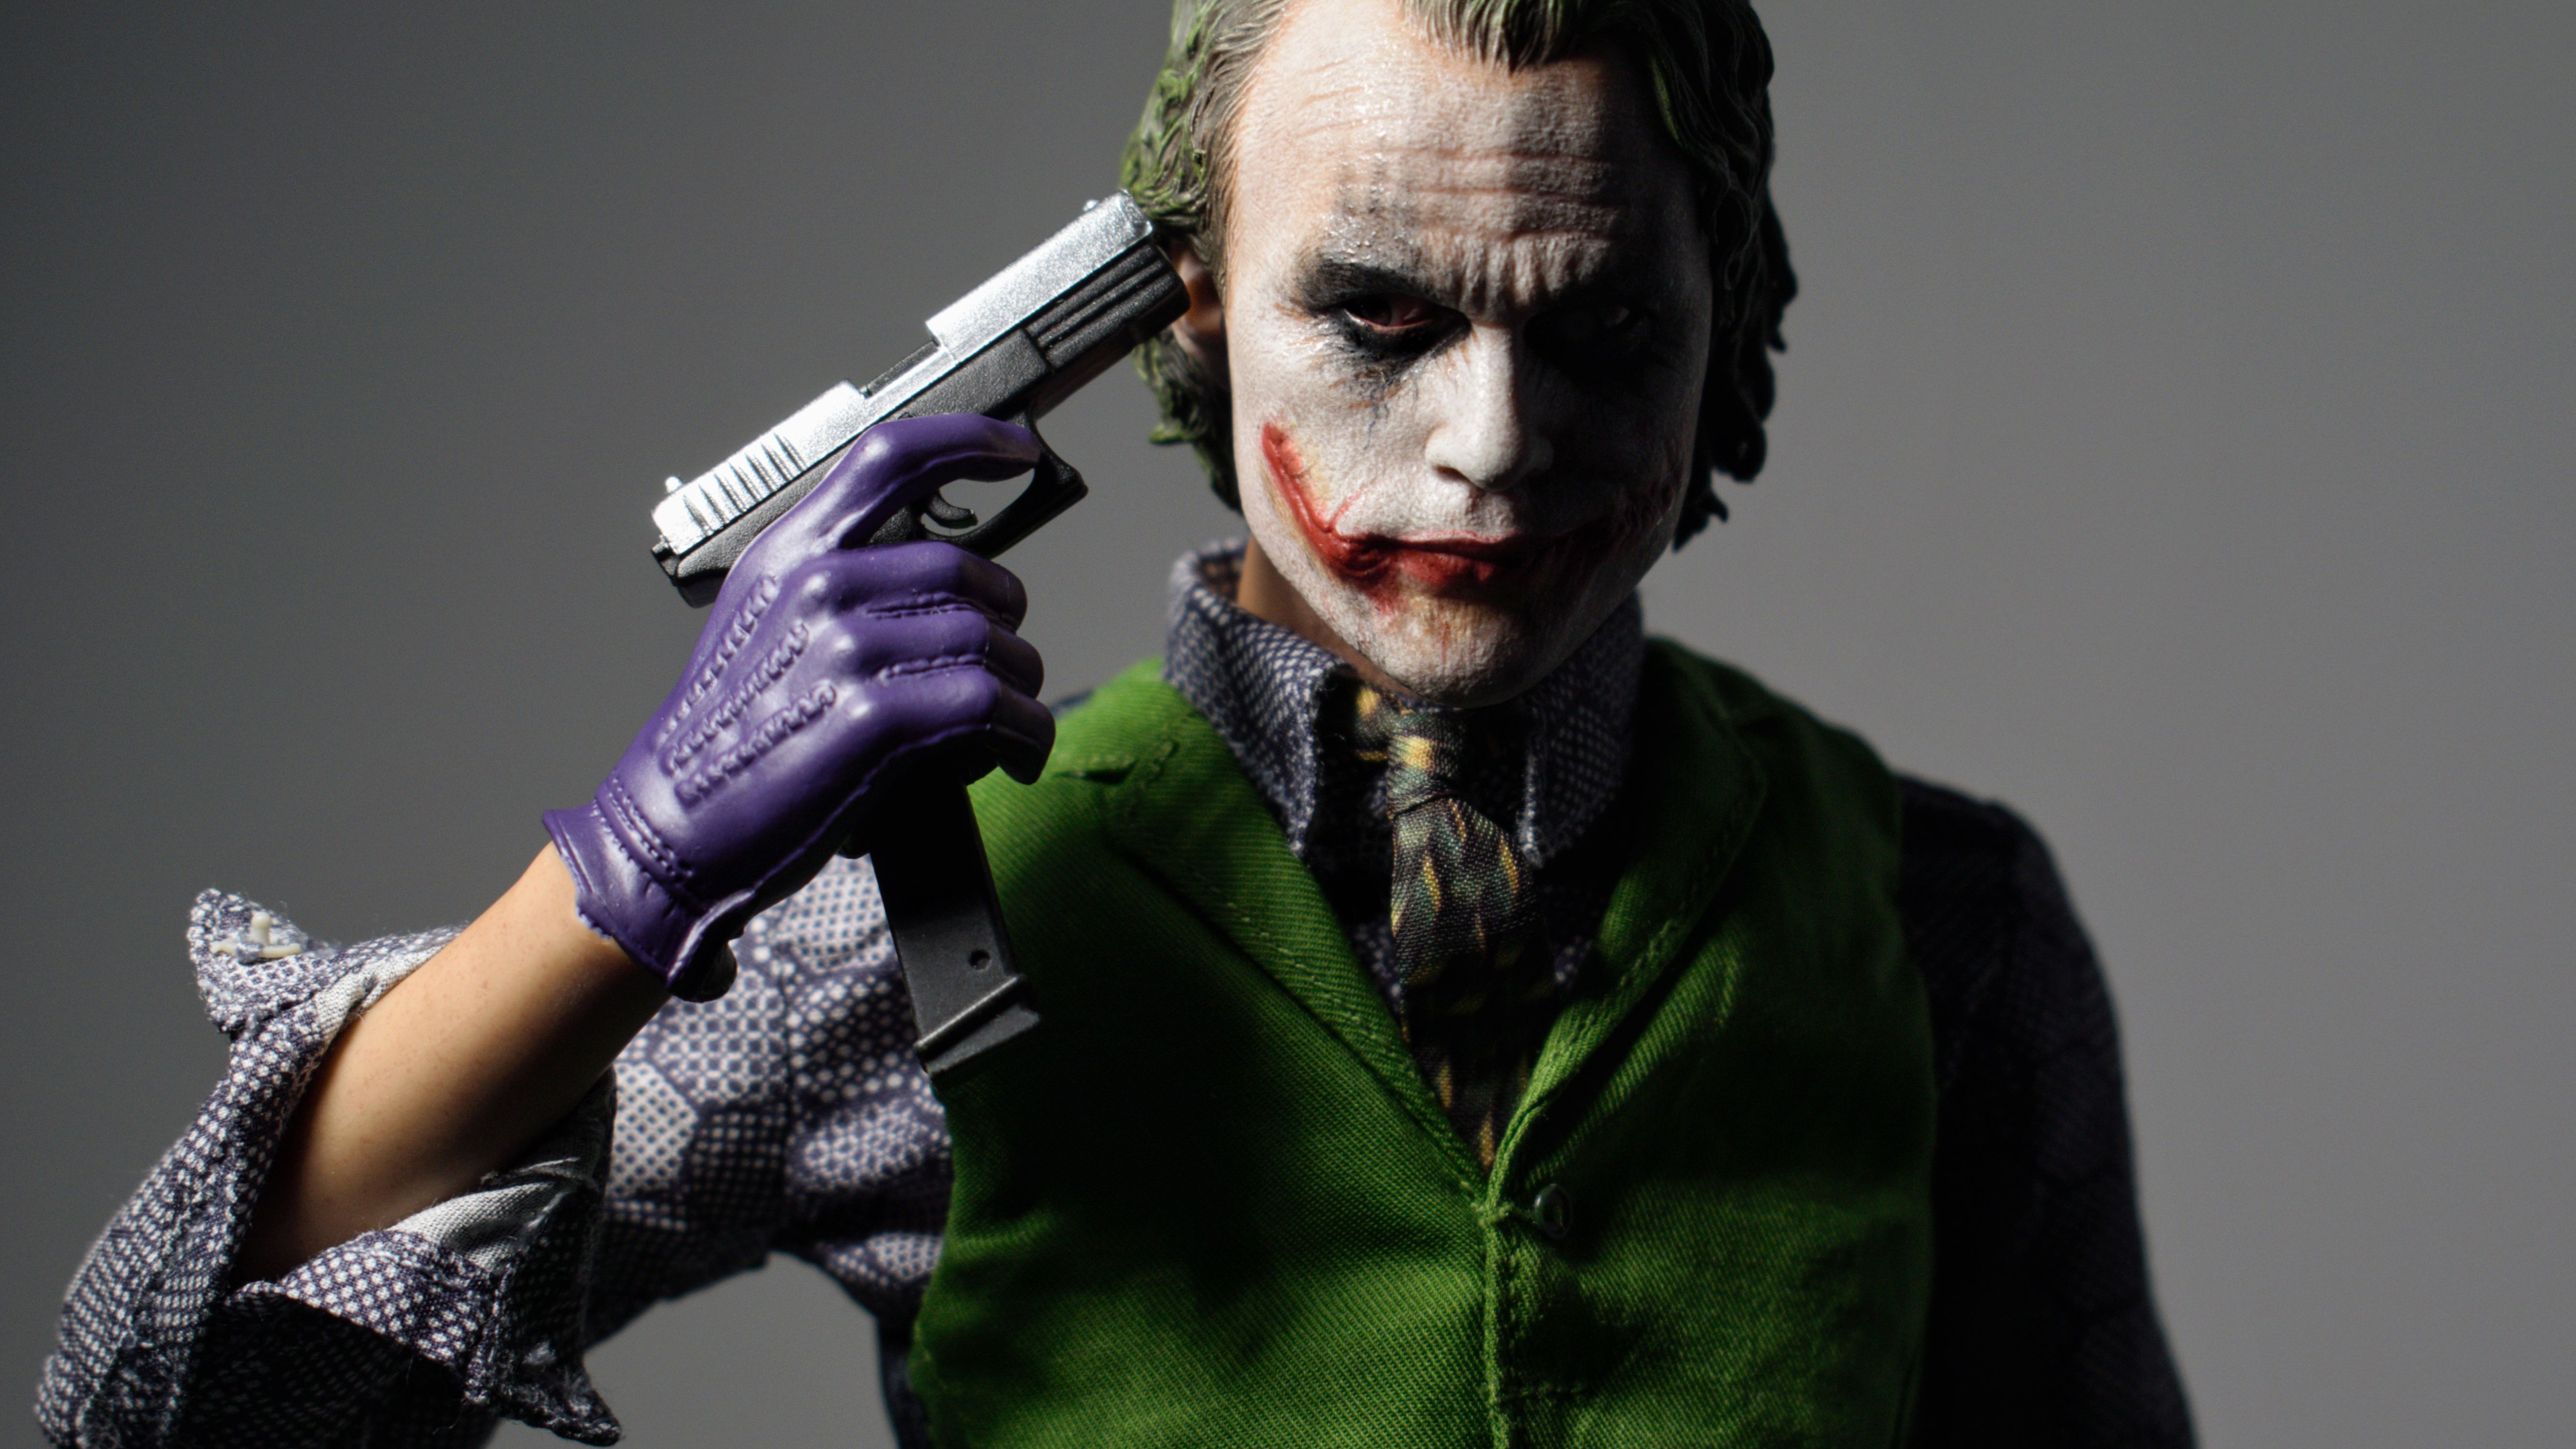  Joker  4k  New Art supervillain wallpapers  superheroes 